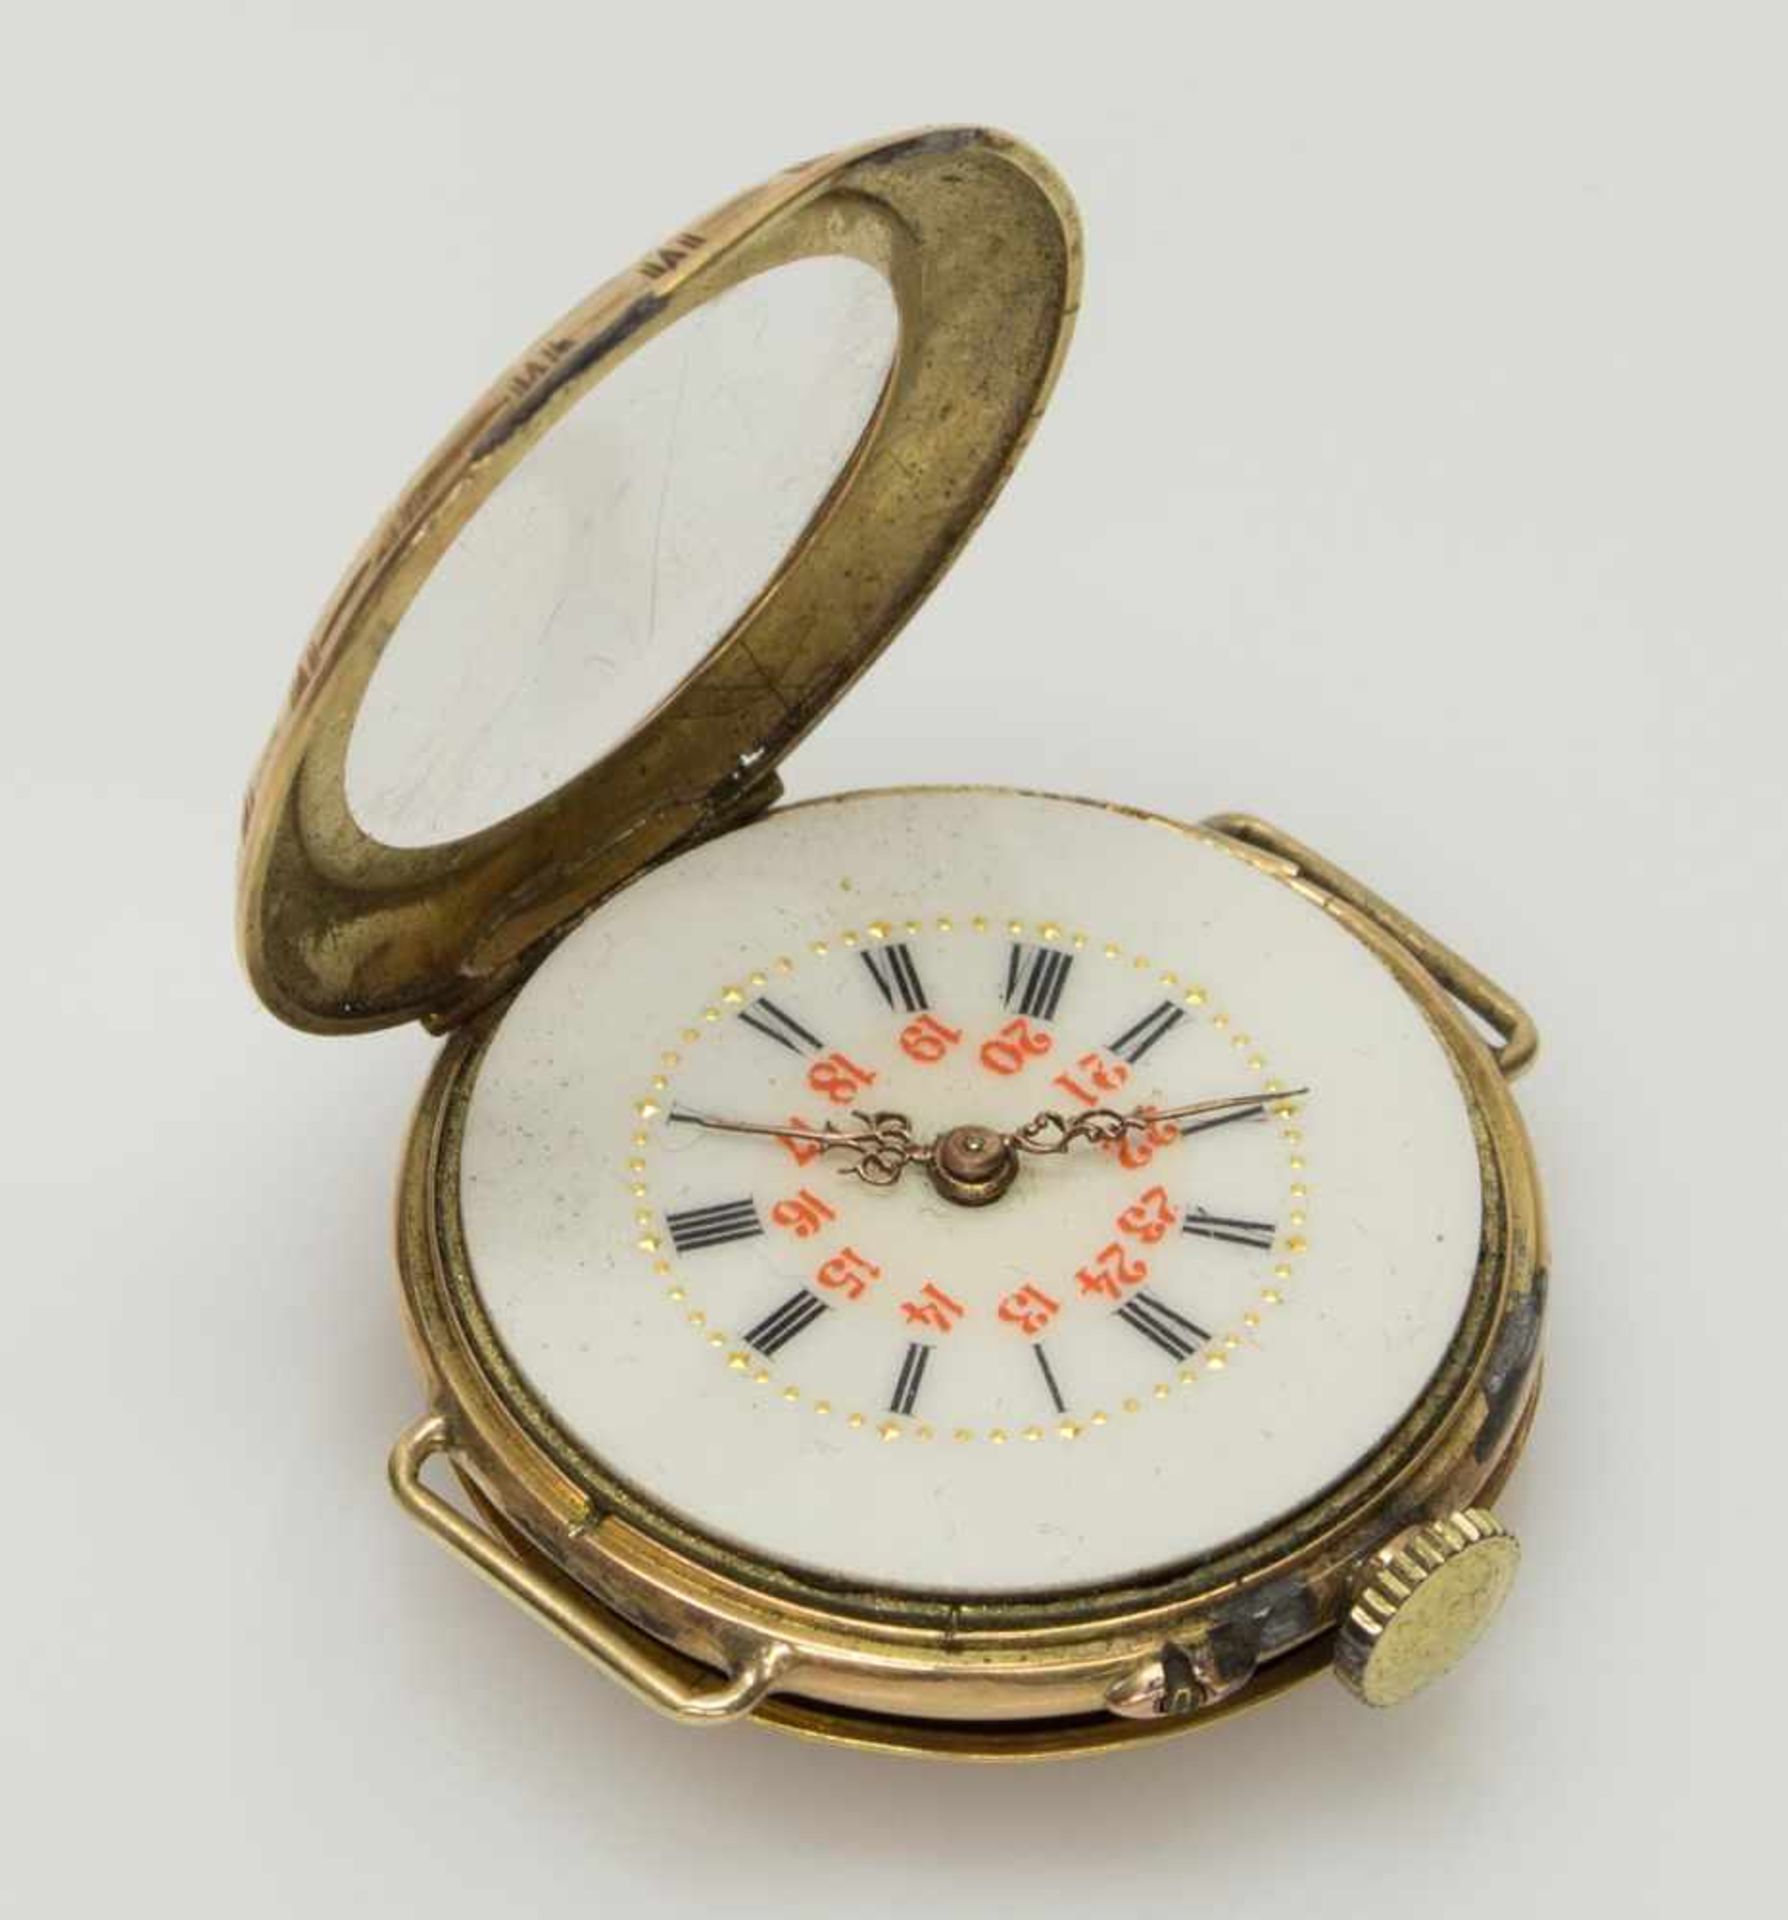 Damen-Taschenuhrum 1900, 585er GG-Gehäusde, umgearbeitet als Armbanduhr, emailliertes Zifferblatt, - Image 2 of 3